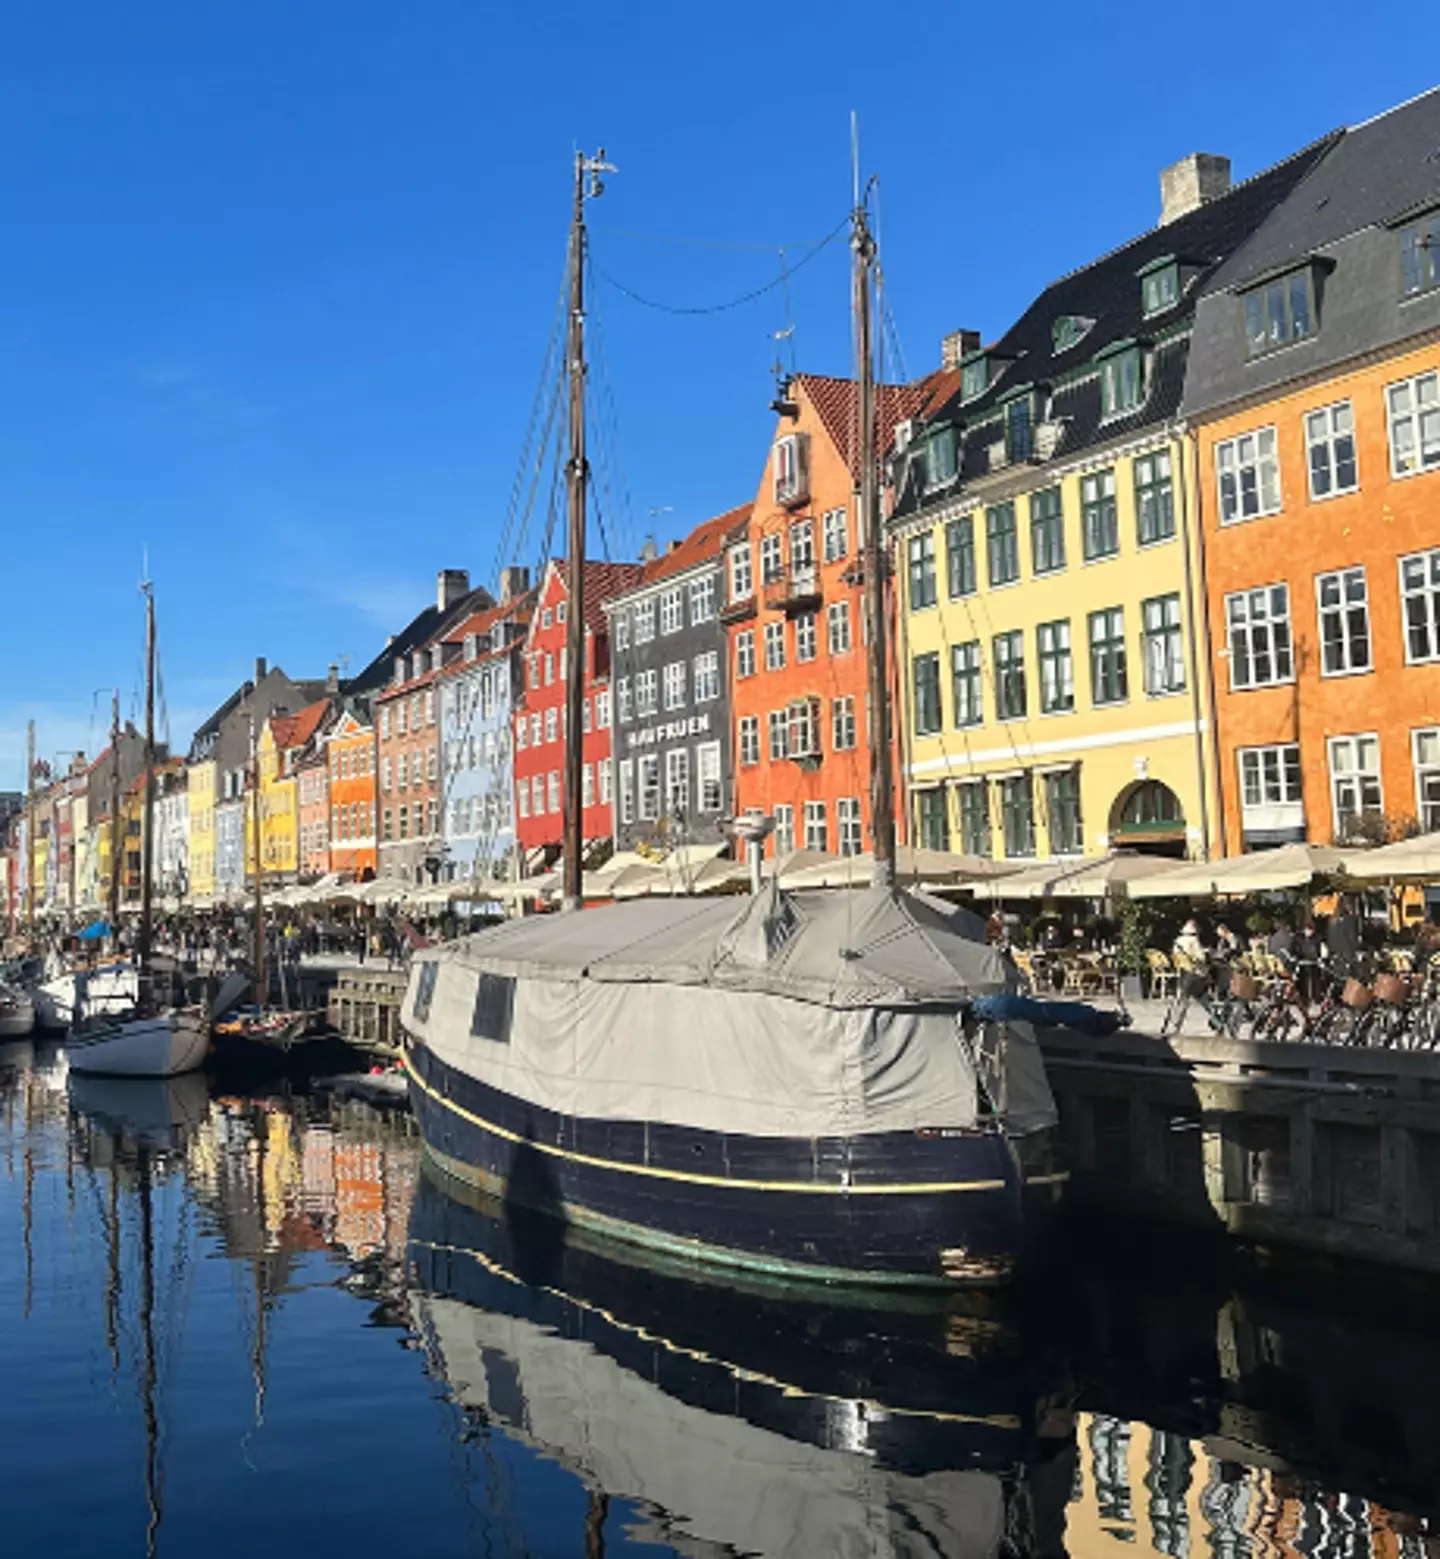 The friends visited Nyhavn in Copenhagen.